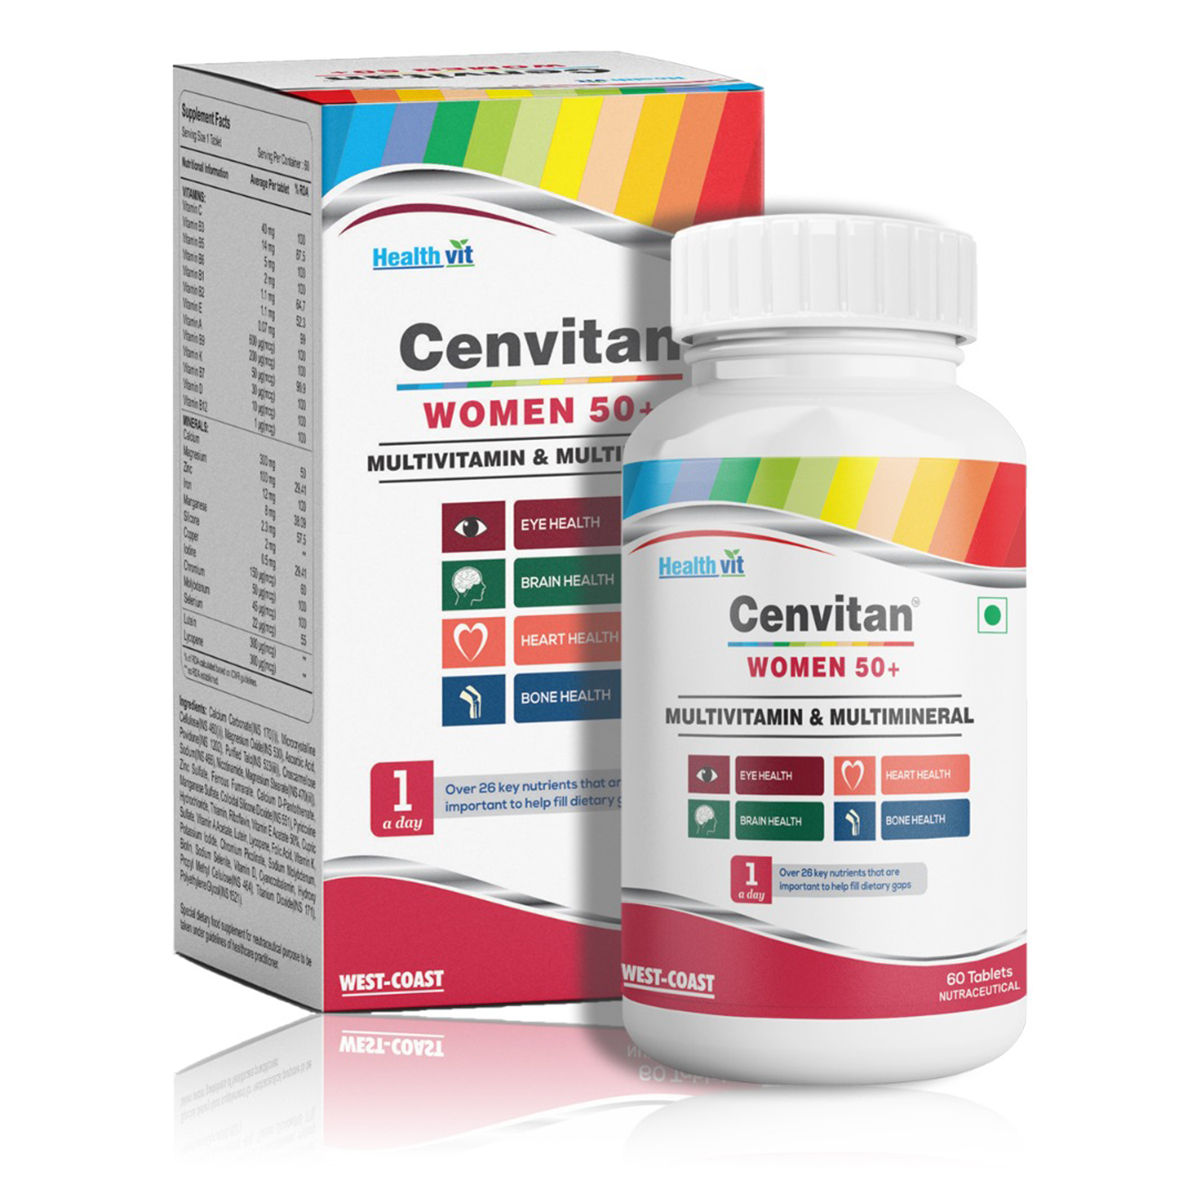 Buy Healthvit Cenvitan Women 50+ Multivitamins & Multimineral, 60 Tablets Online